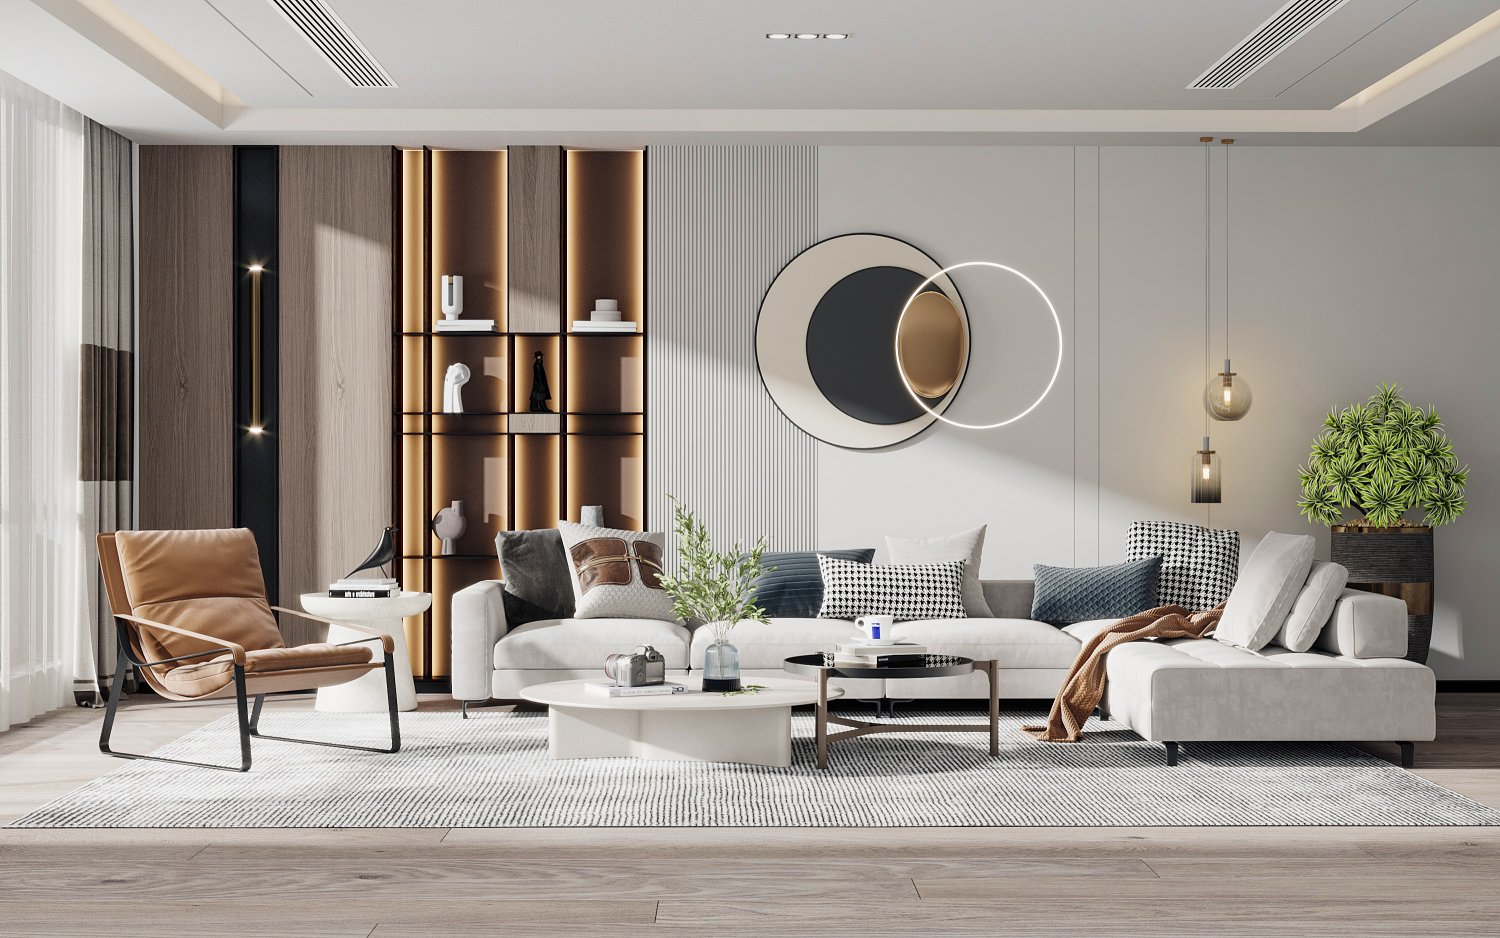 Modern living room 20D Modell in Wohnzimmer 20DExport